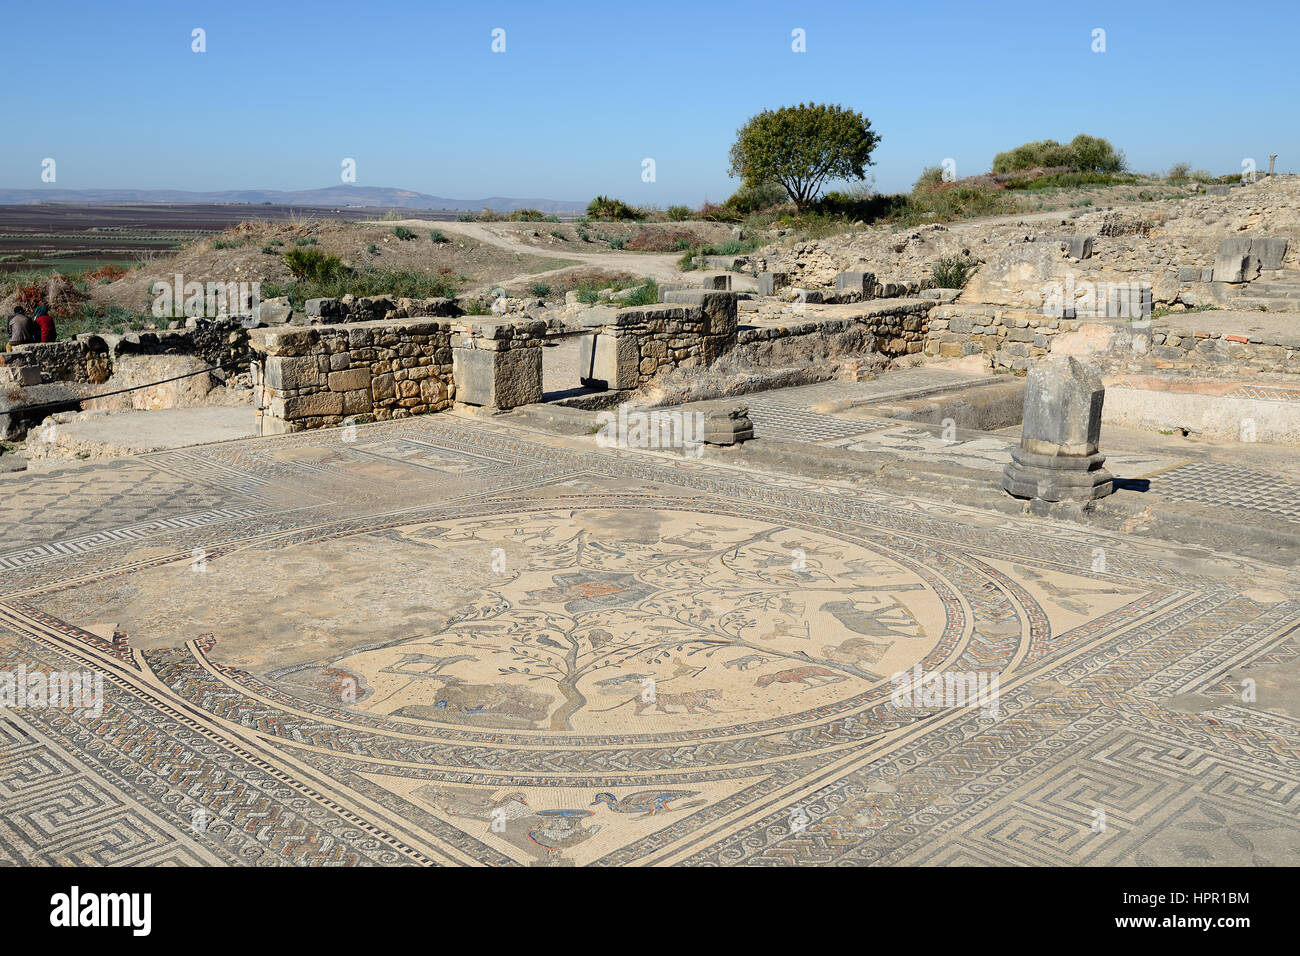 Ampio complesso di rovine della città romana Volubilis - di antica città capitale della Mauritania nella parte centrale del Marocco dalla città di Meknes. Il Foto Stock